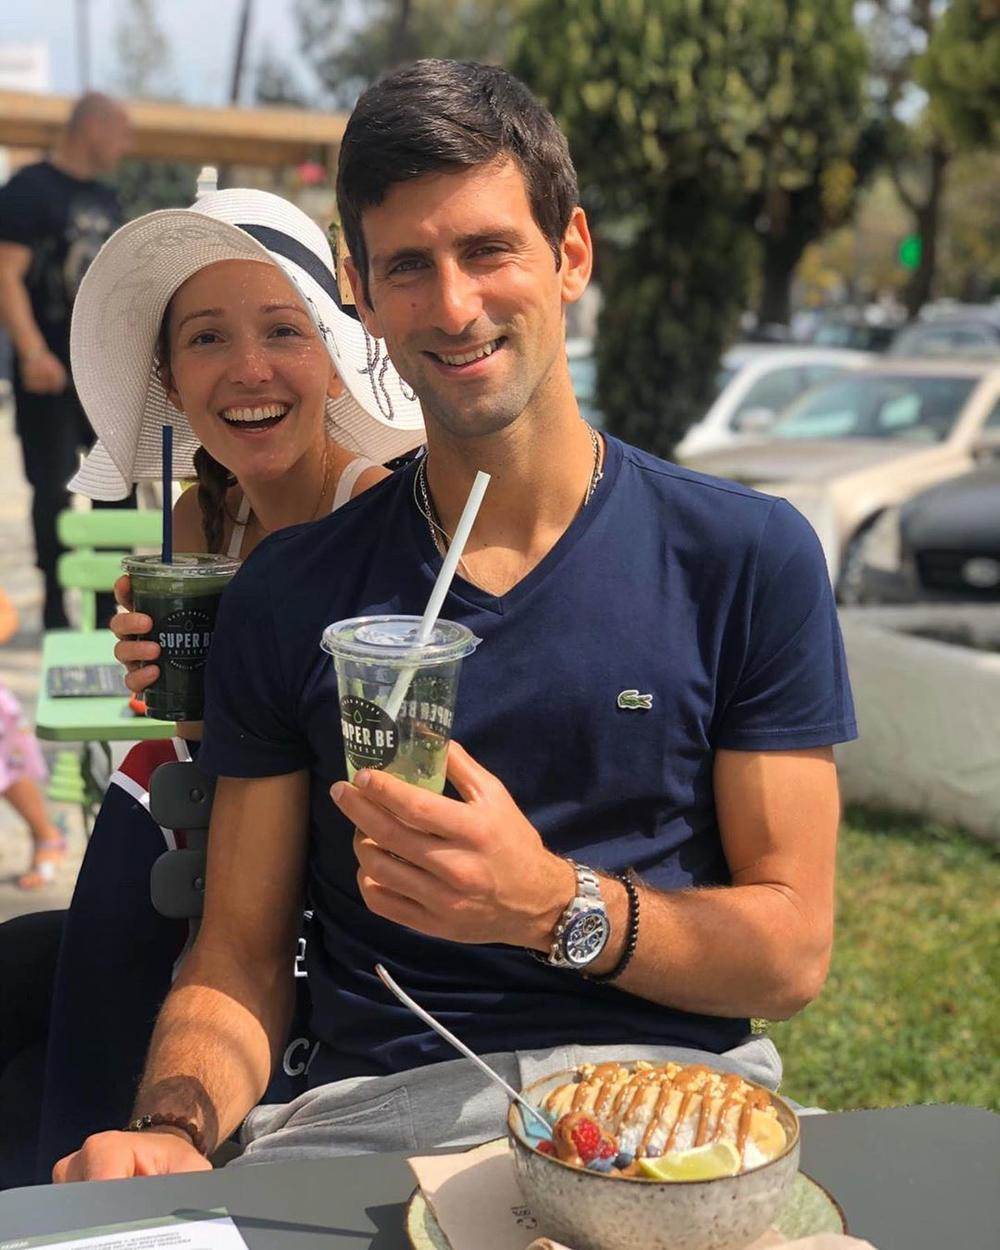  Nećete verovati, ali Novak Đoković sad jede - cveće! Zna prvi teniser sveta šta radi 